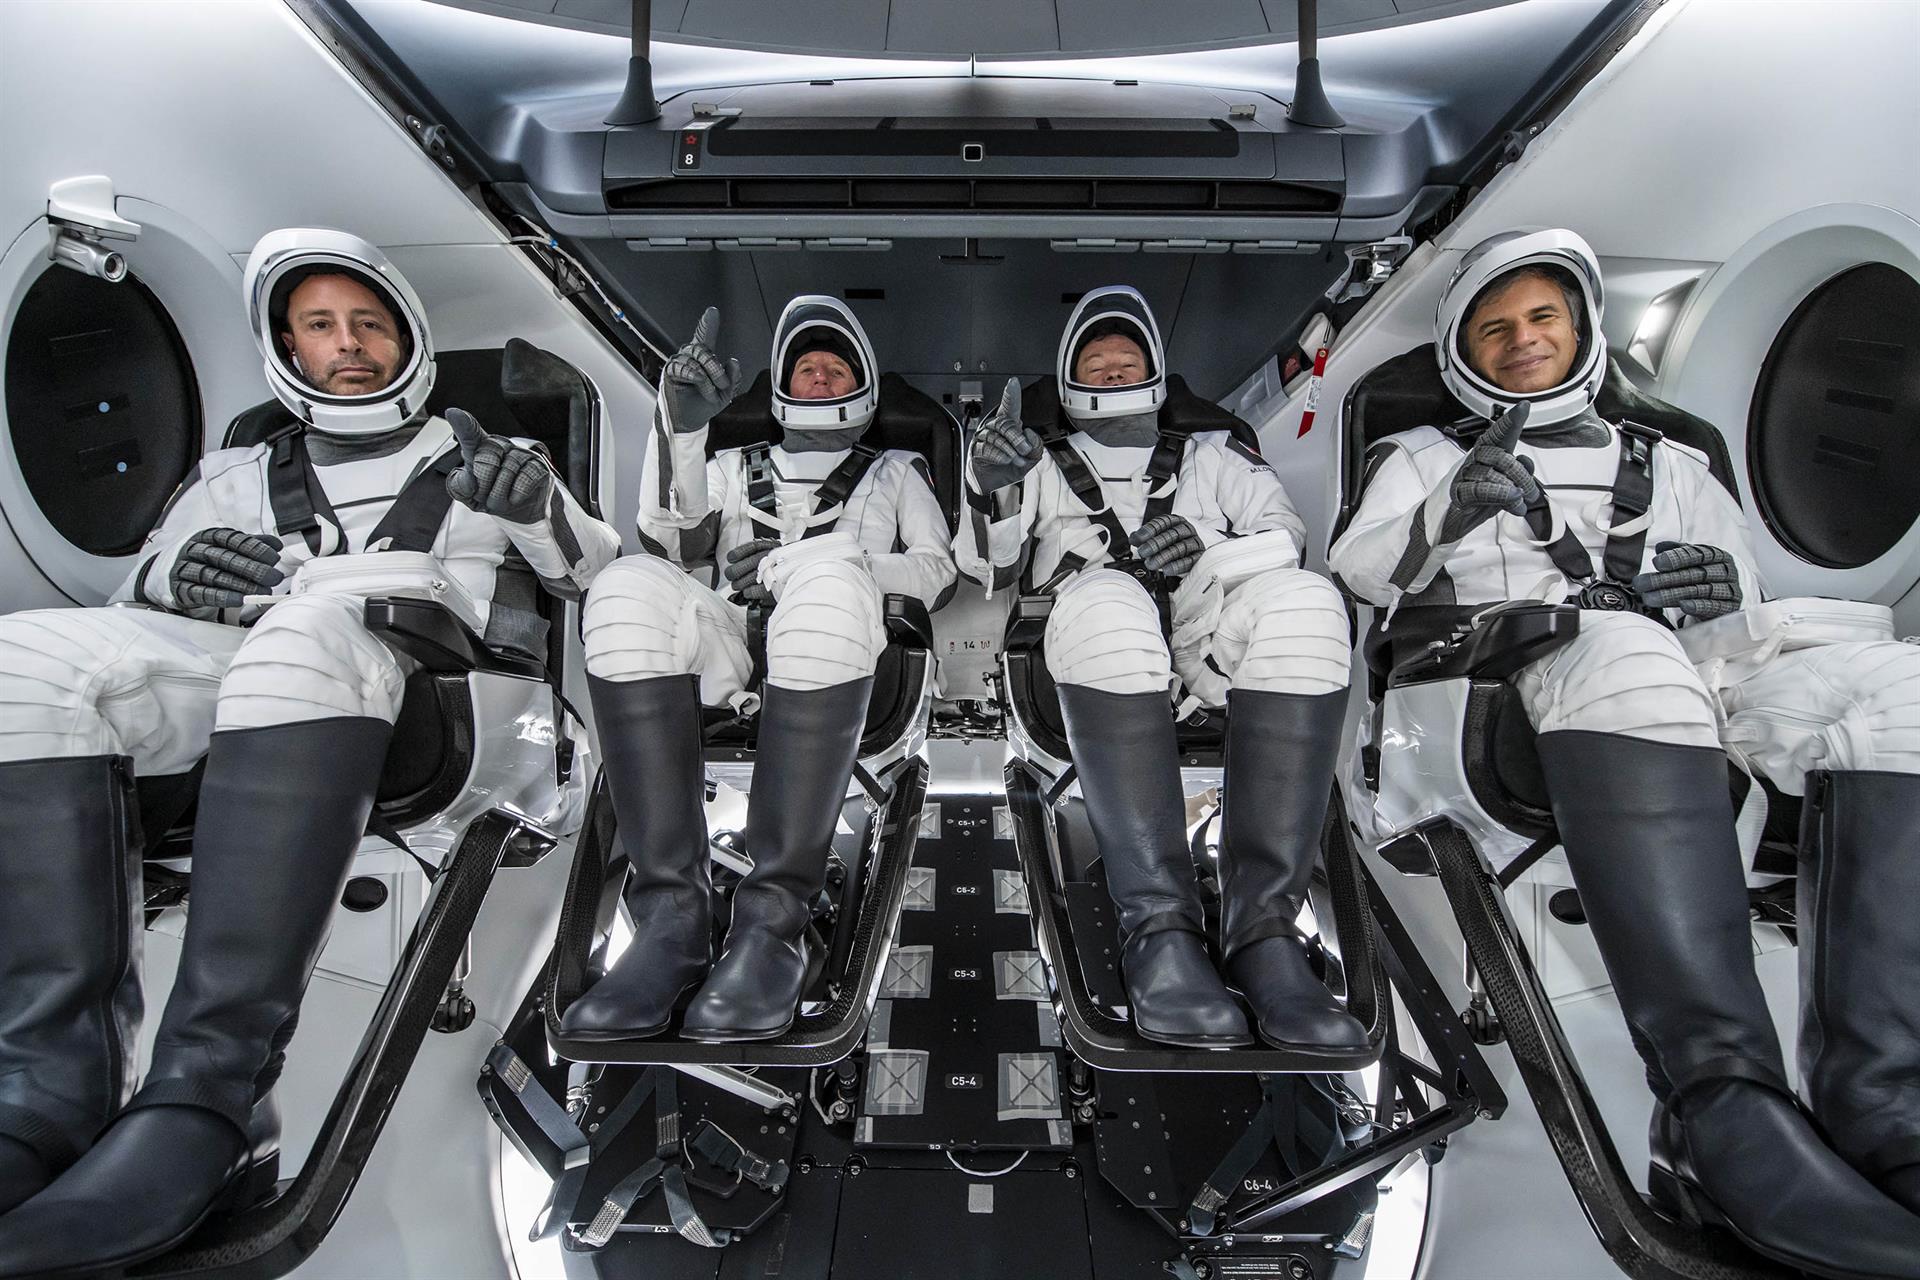 Fotografía cedida por SpaceX donde aparece la tripulación de la Misión Axiom 1 (Ax-1) a bordo de la nave espacial que viajó a la Estación Espacial Internacional, (i-d) el especialista, Mark Pathy; el piloto Larry Connor; el comandante, Miguel López-Alegría, y el especialista, Eytan Stibbe. EFE/SpaceX /SOLO USO EDITORIAL /NO VENTAS /SOLO DISPONIBLE PARA ILUSTRAR LA NOTICIA QUE ACOMPAÑA /CRÉDITO OBLIGATORIO
